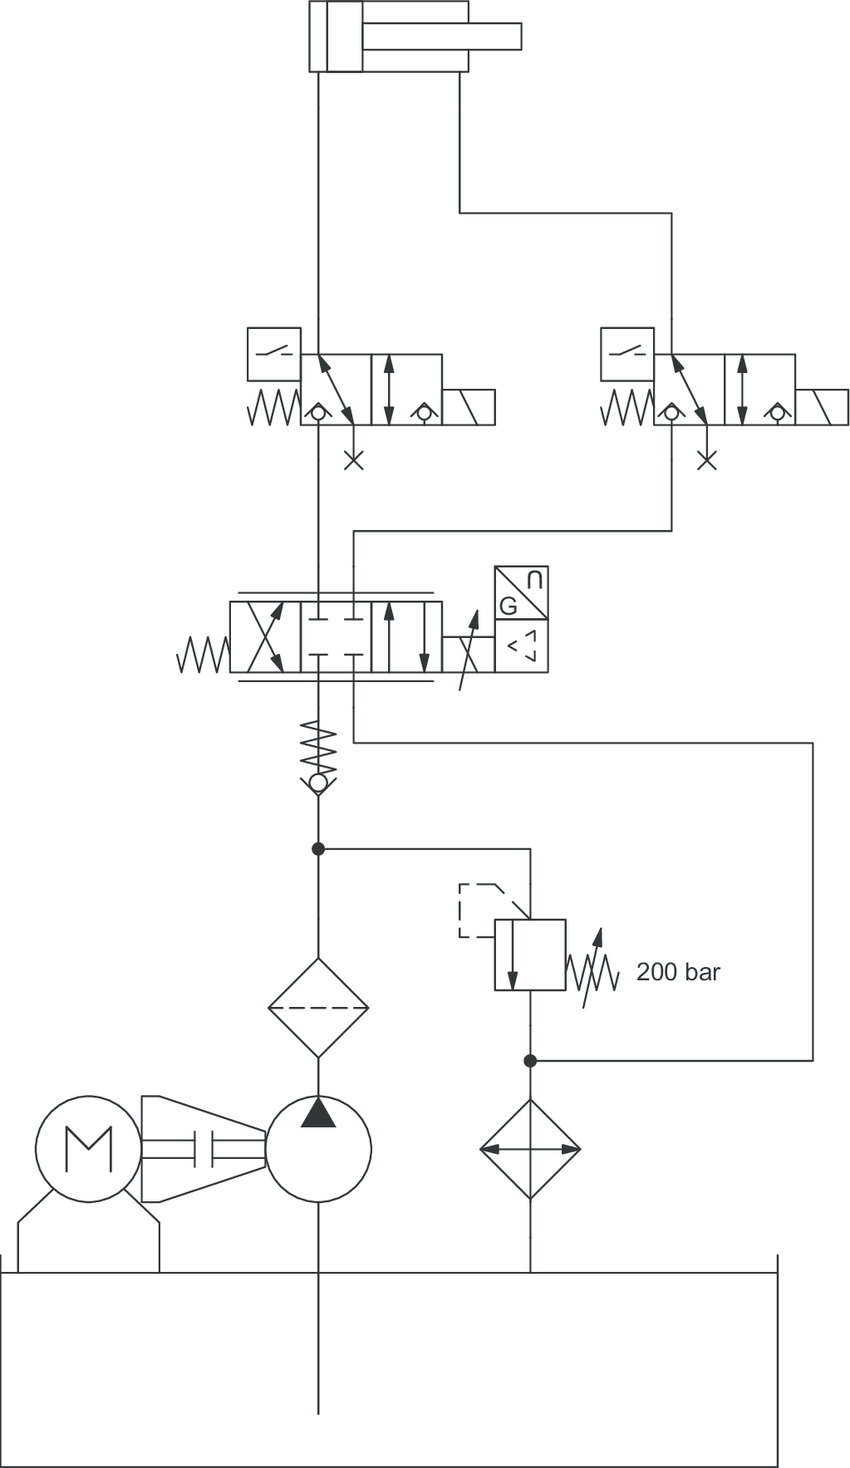 12 Volt Hydraulic Pump Wiring Diagram Hydraulic Pump Diagram Schematic Diagrams Blog Wiring Diagrams